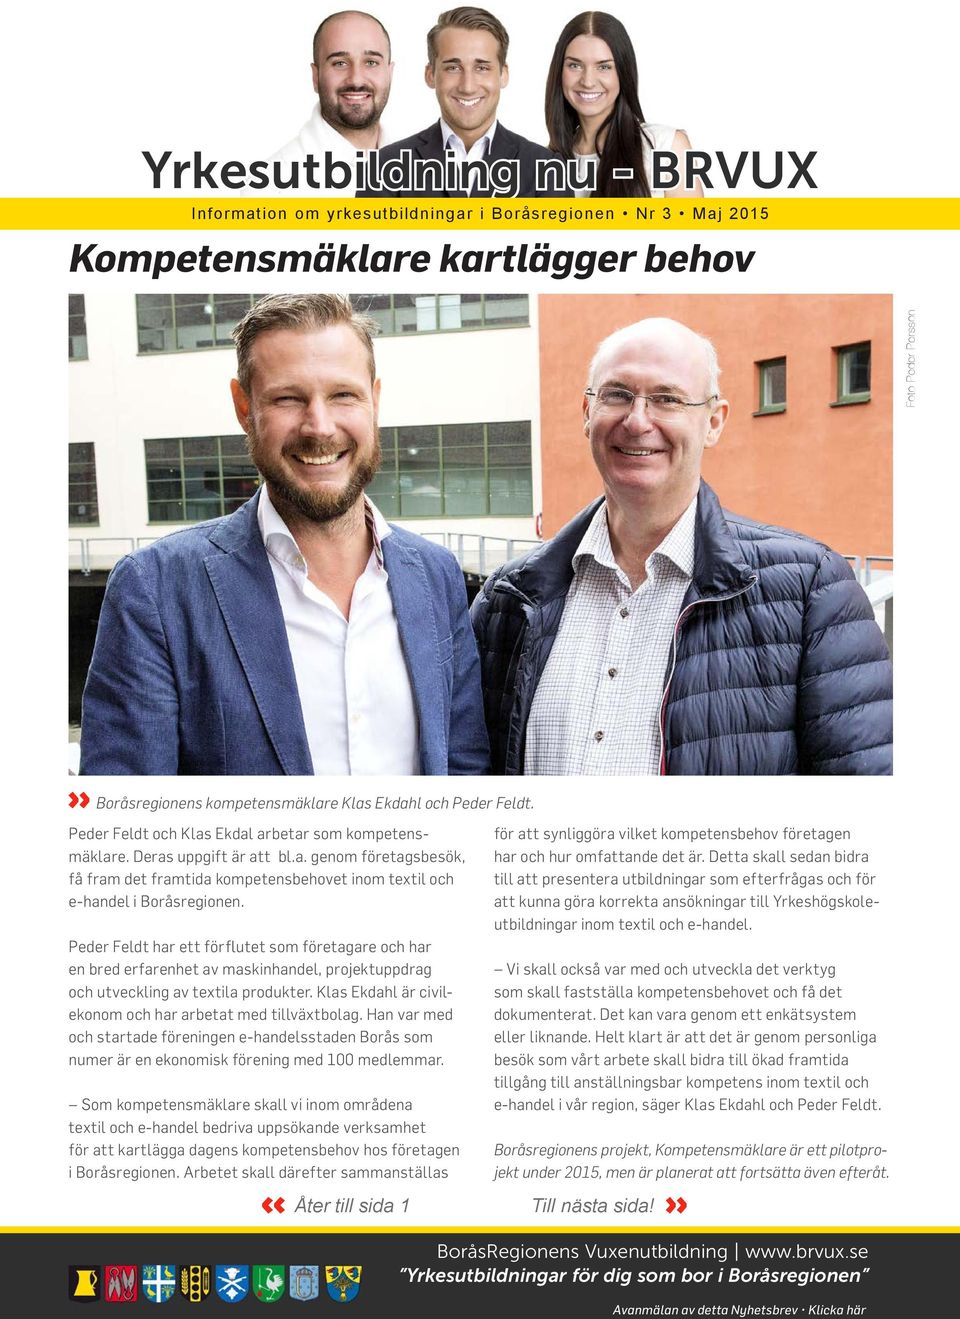 Klas Ekdahl är civilekonom och har arbetat med tillväxtbolag. Han var med och startade föreningen e-handelsstaden Borås som numer är en ekonomisk förening med 100 medlemmar.